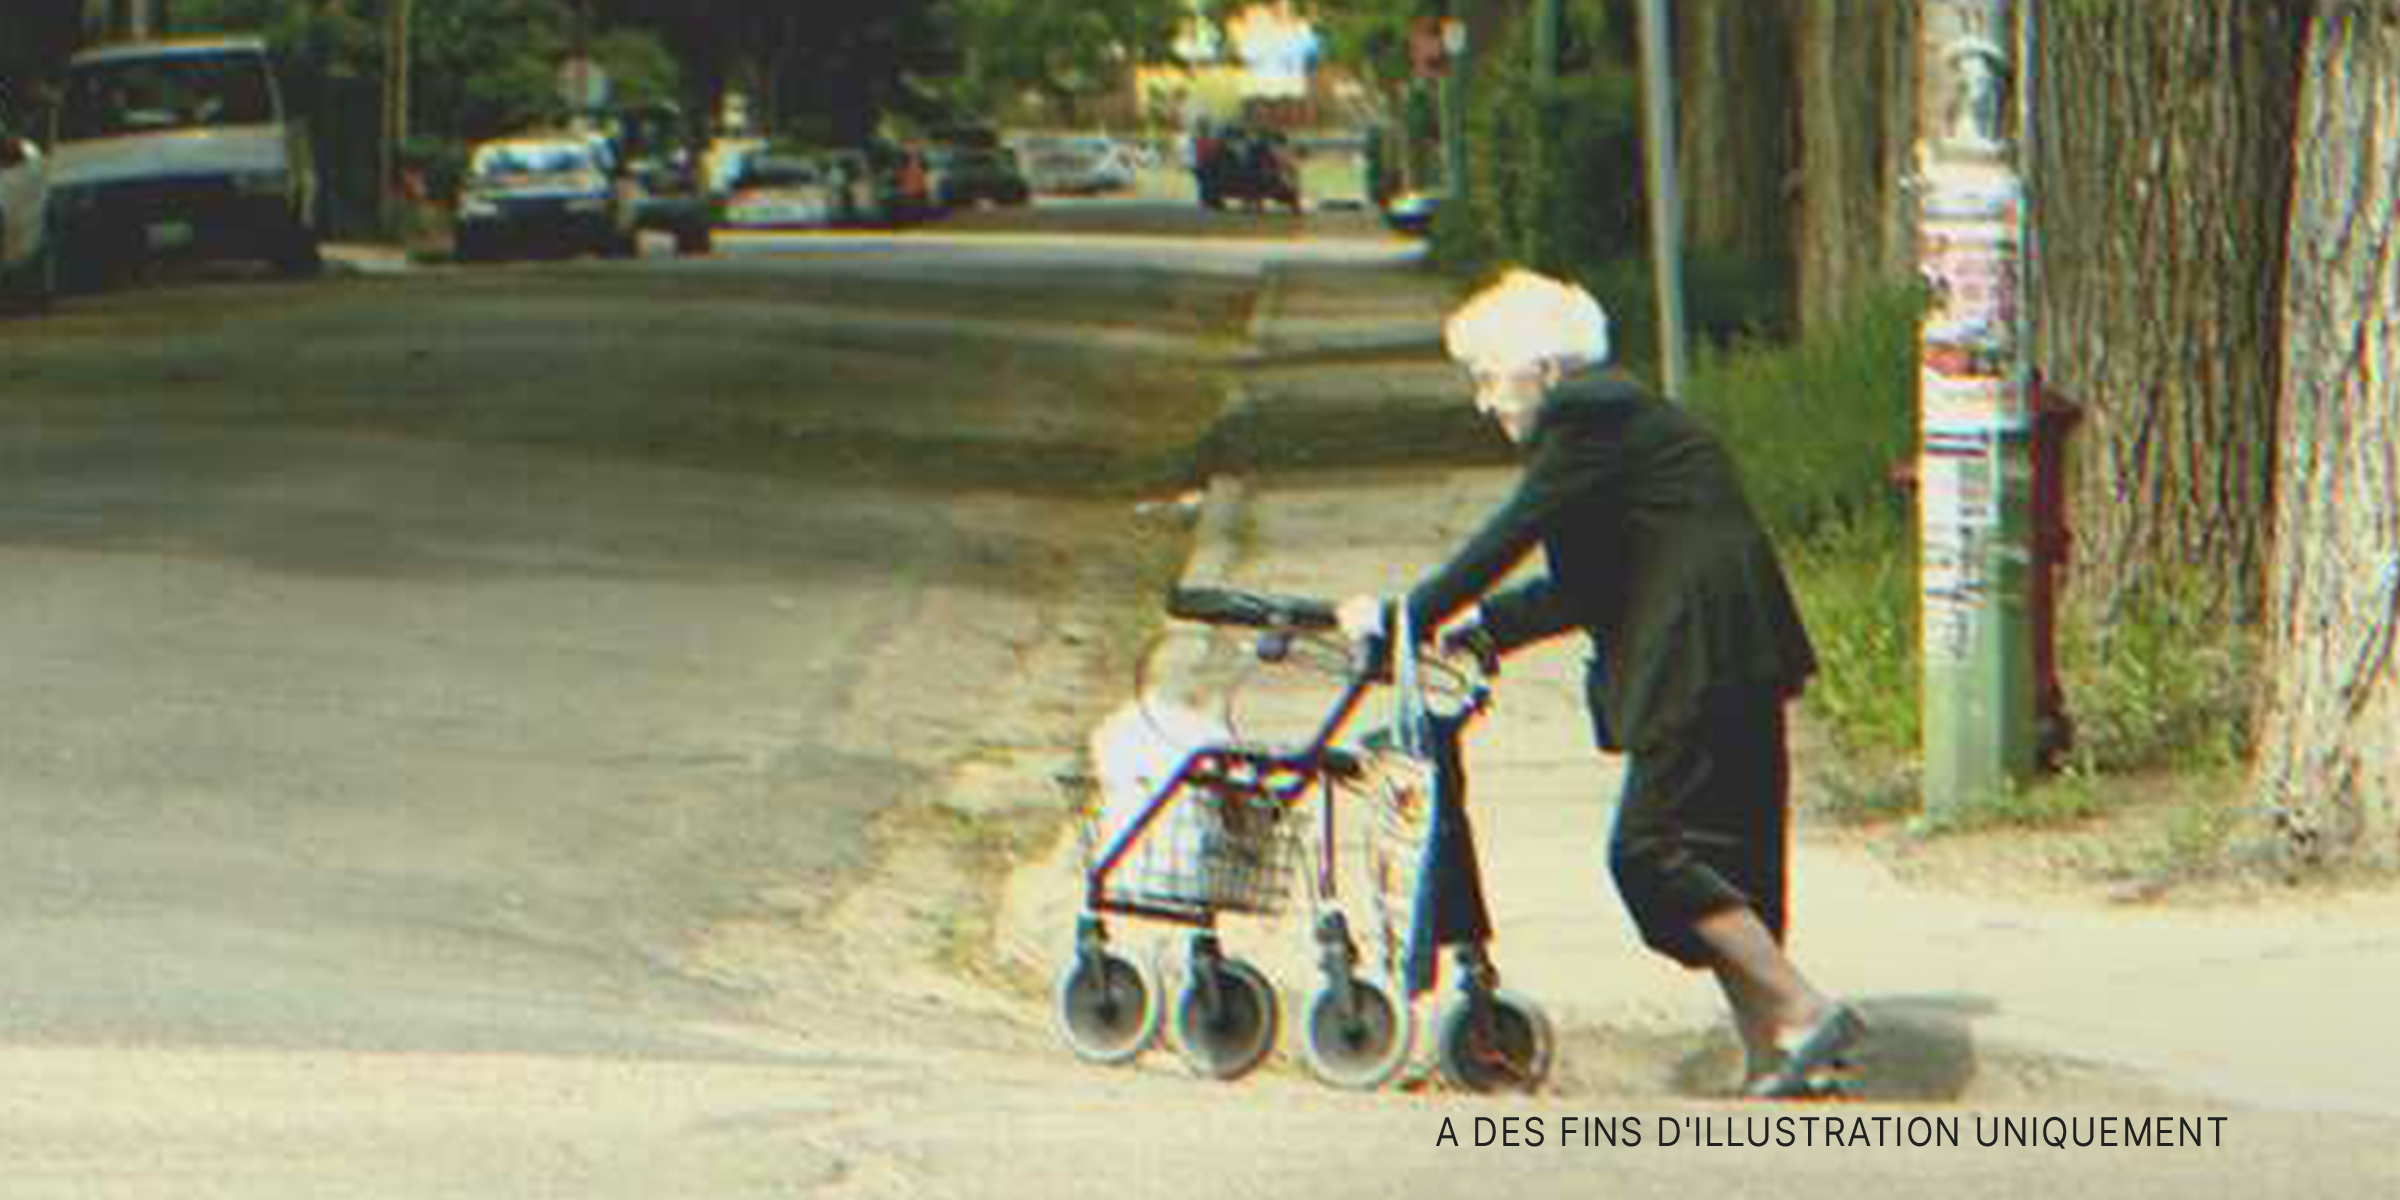 Une femme âgée dans la rue | Source : Flickr / Daniel Paquet